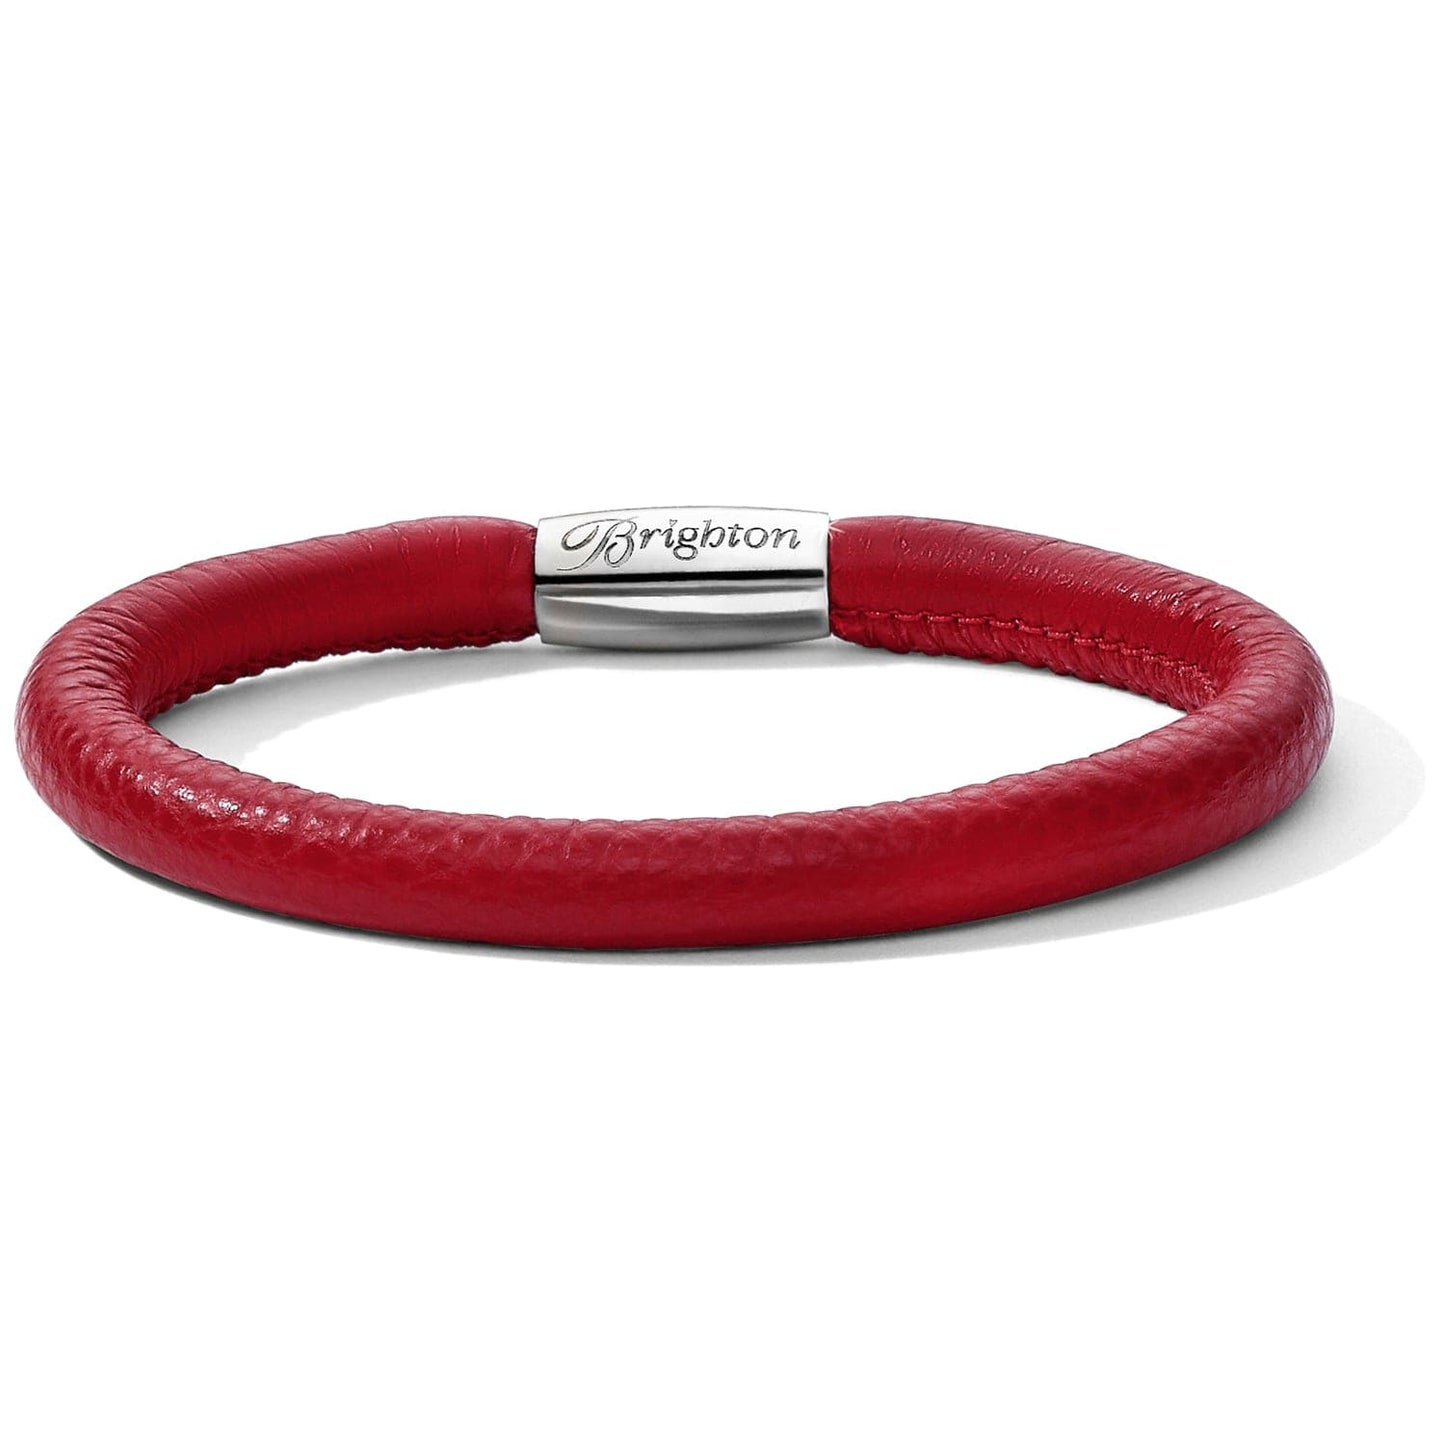 Woodstock Single Bracelet